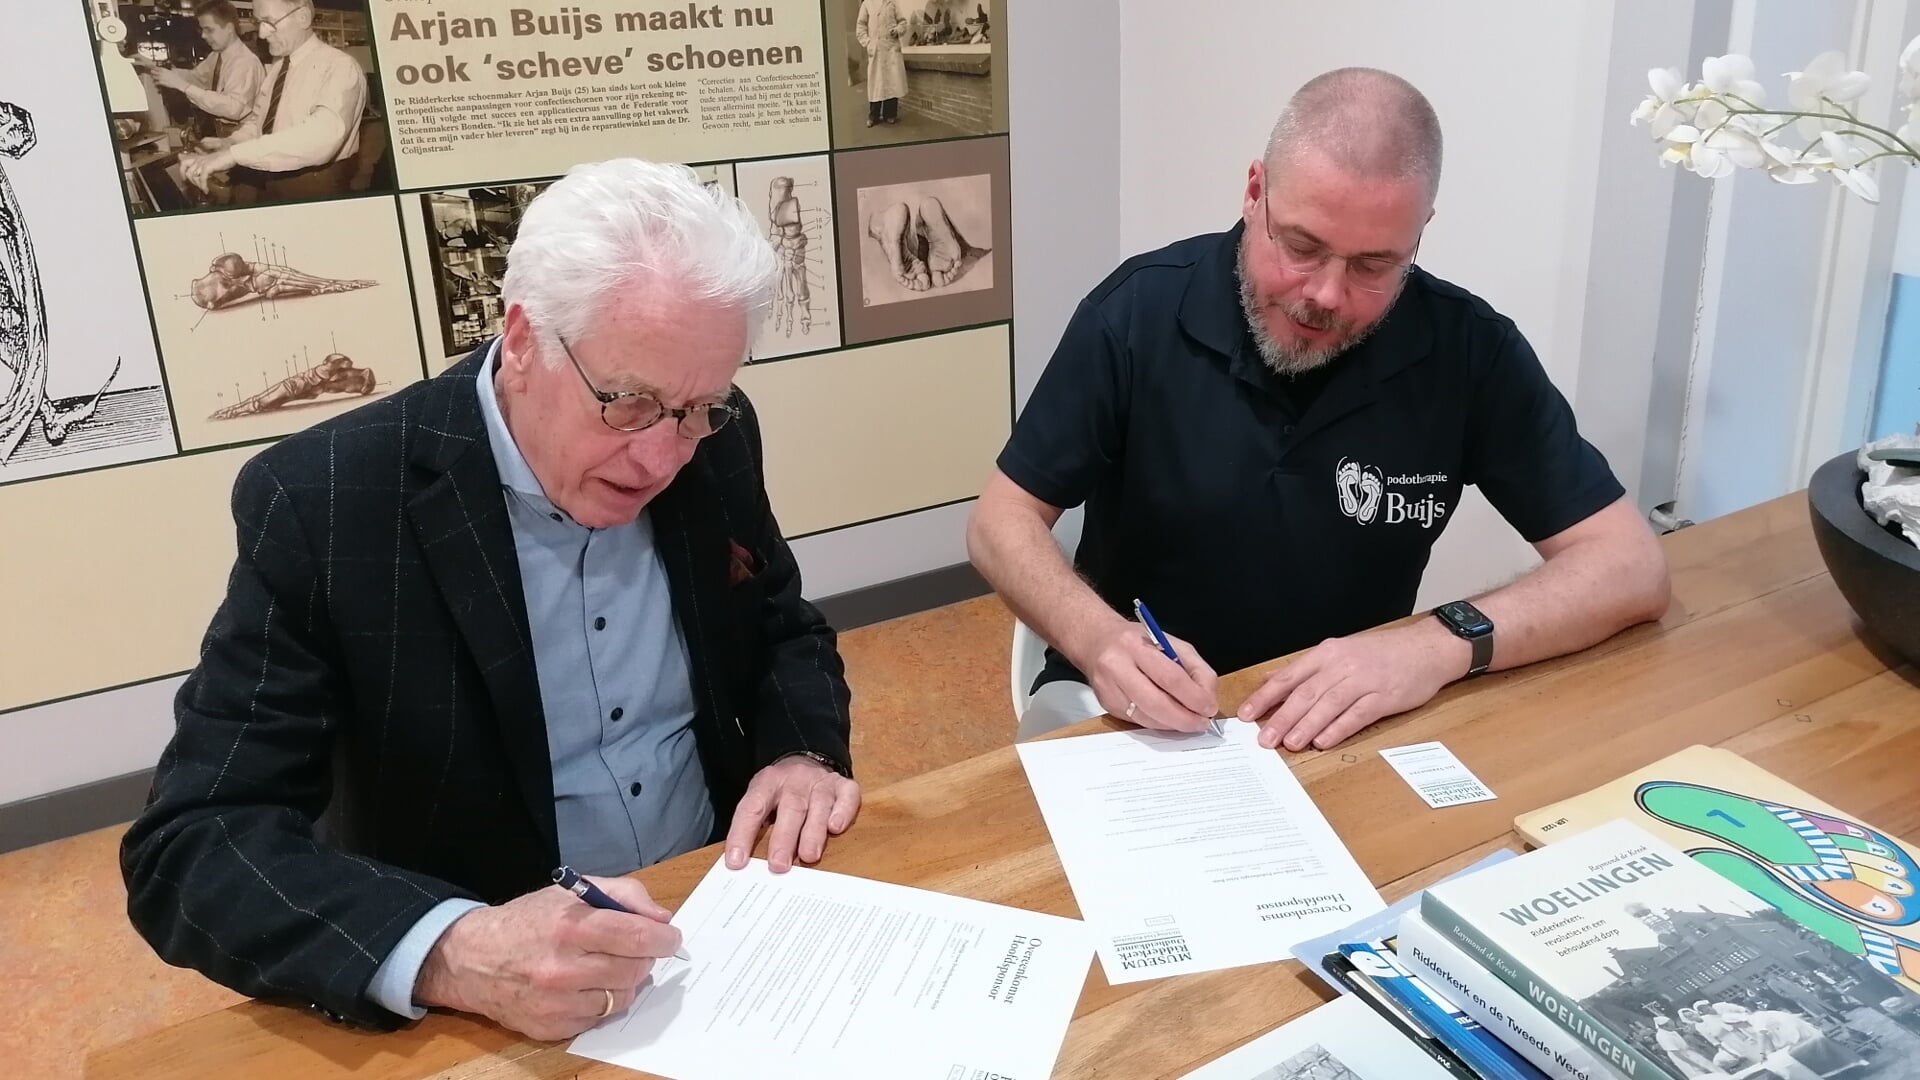 Stichtingsvoorzitter Jan Verhoeven en Arjan Buijs tekenden de overeenkomst